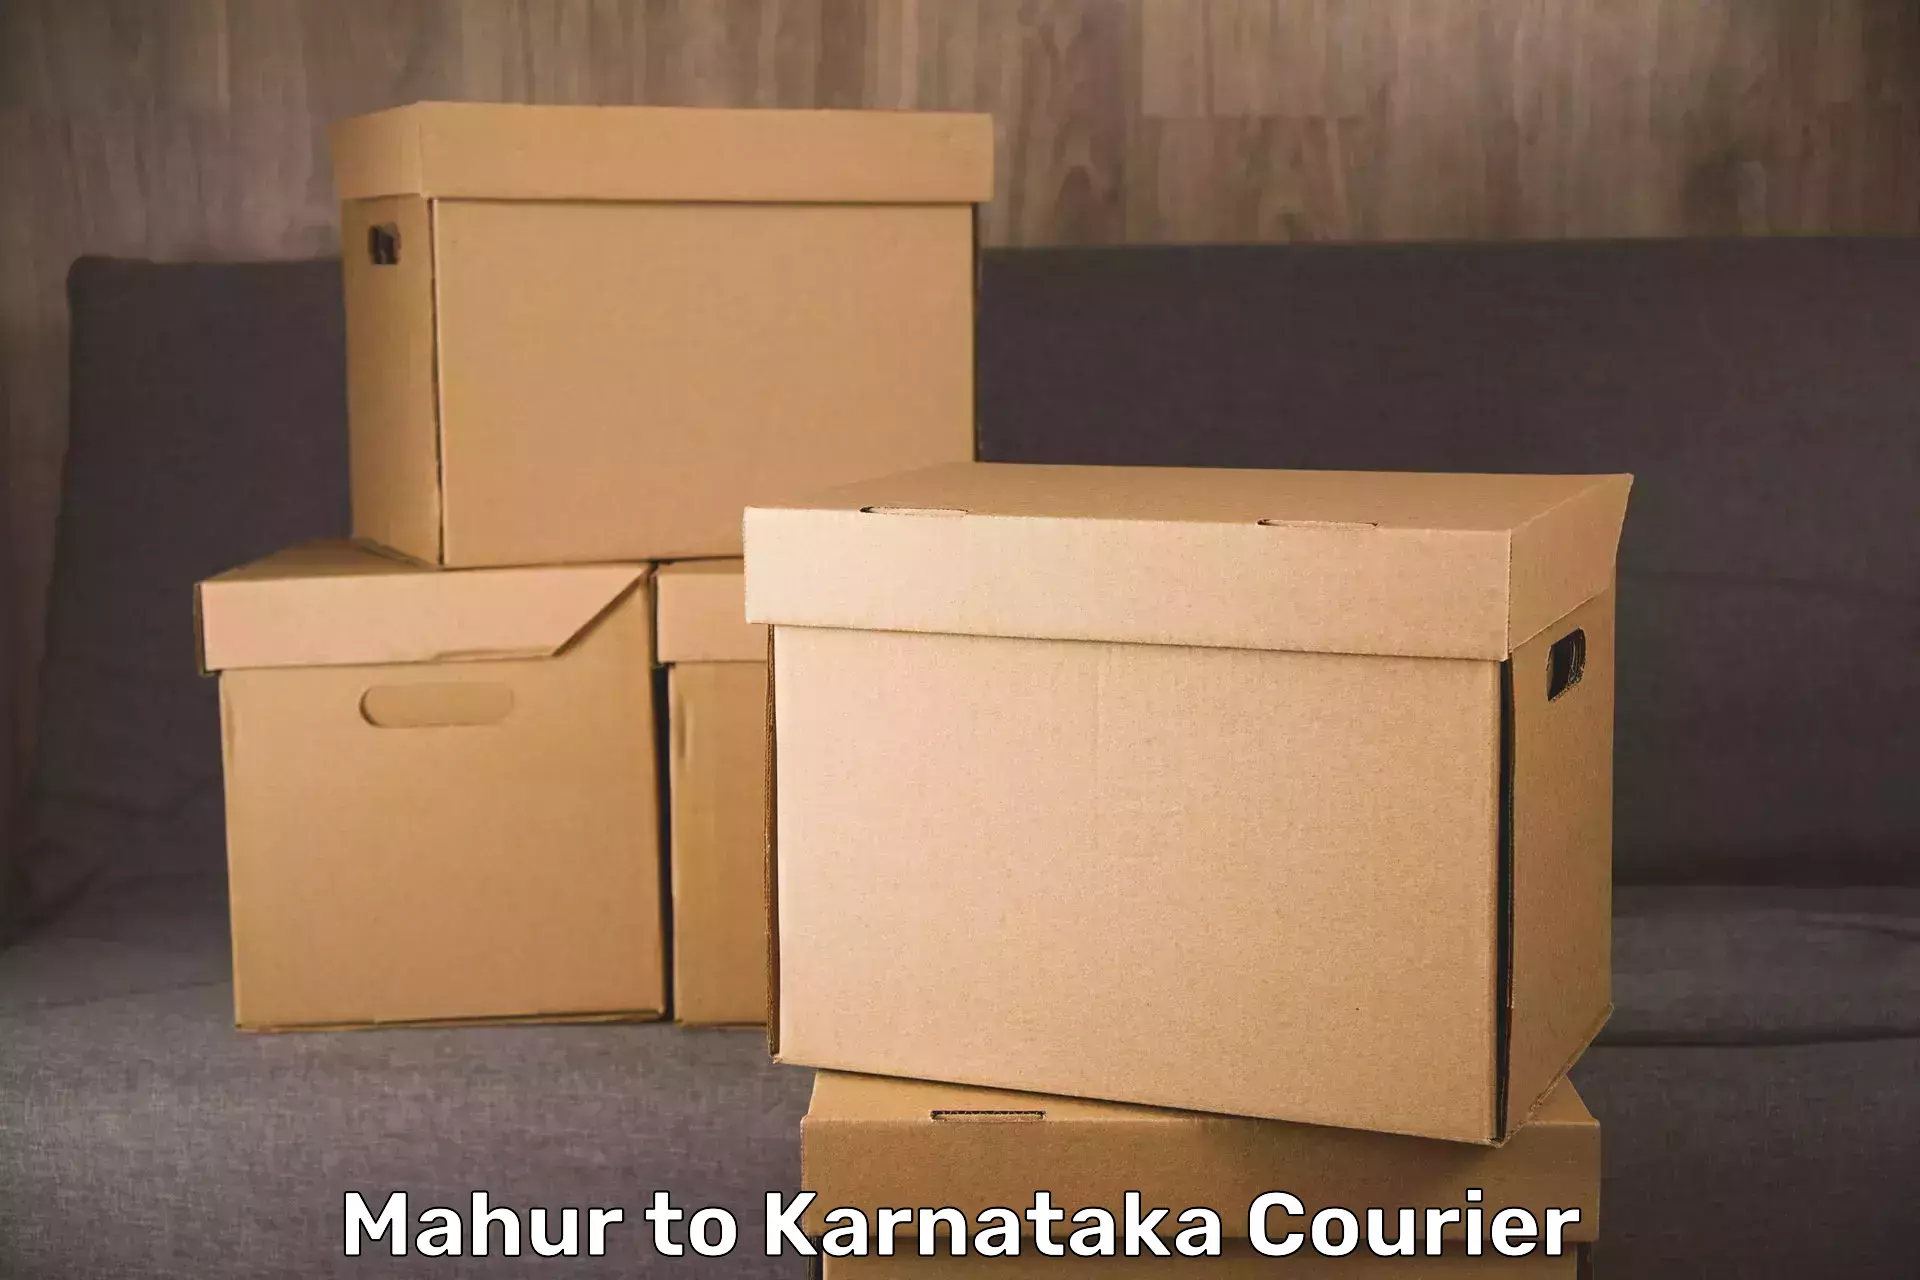 Baggage delivery technology Mahur to Karnataka